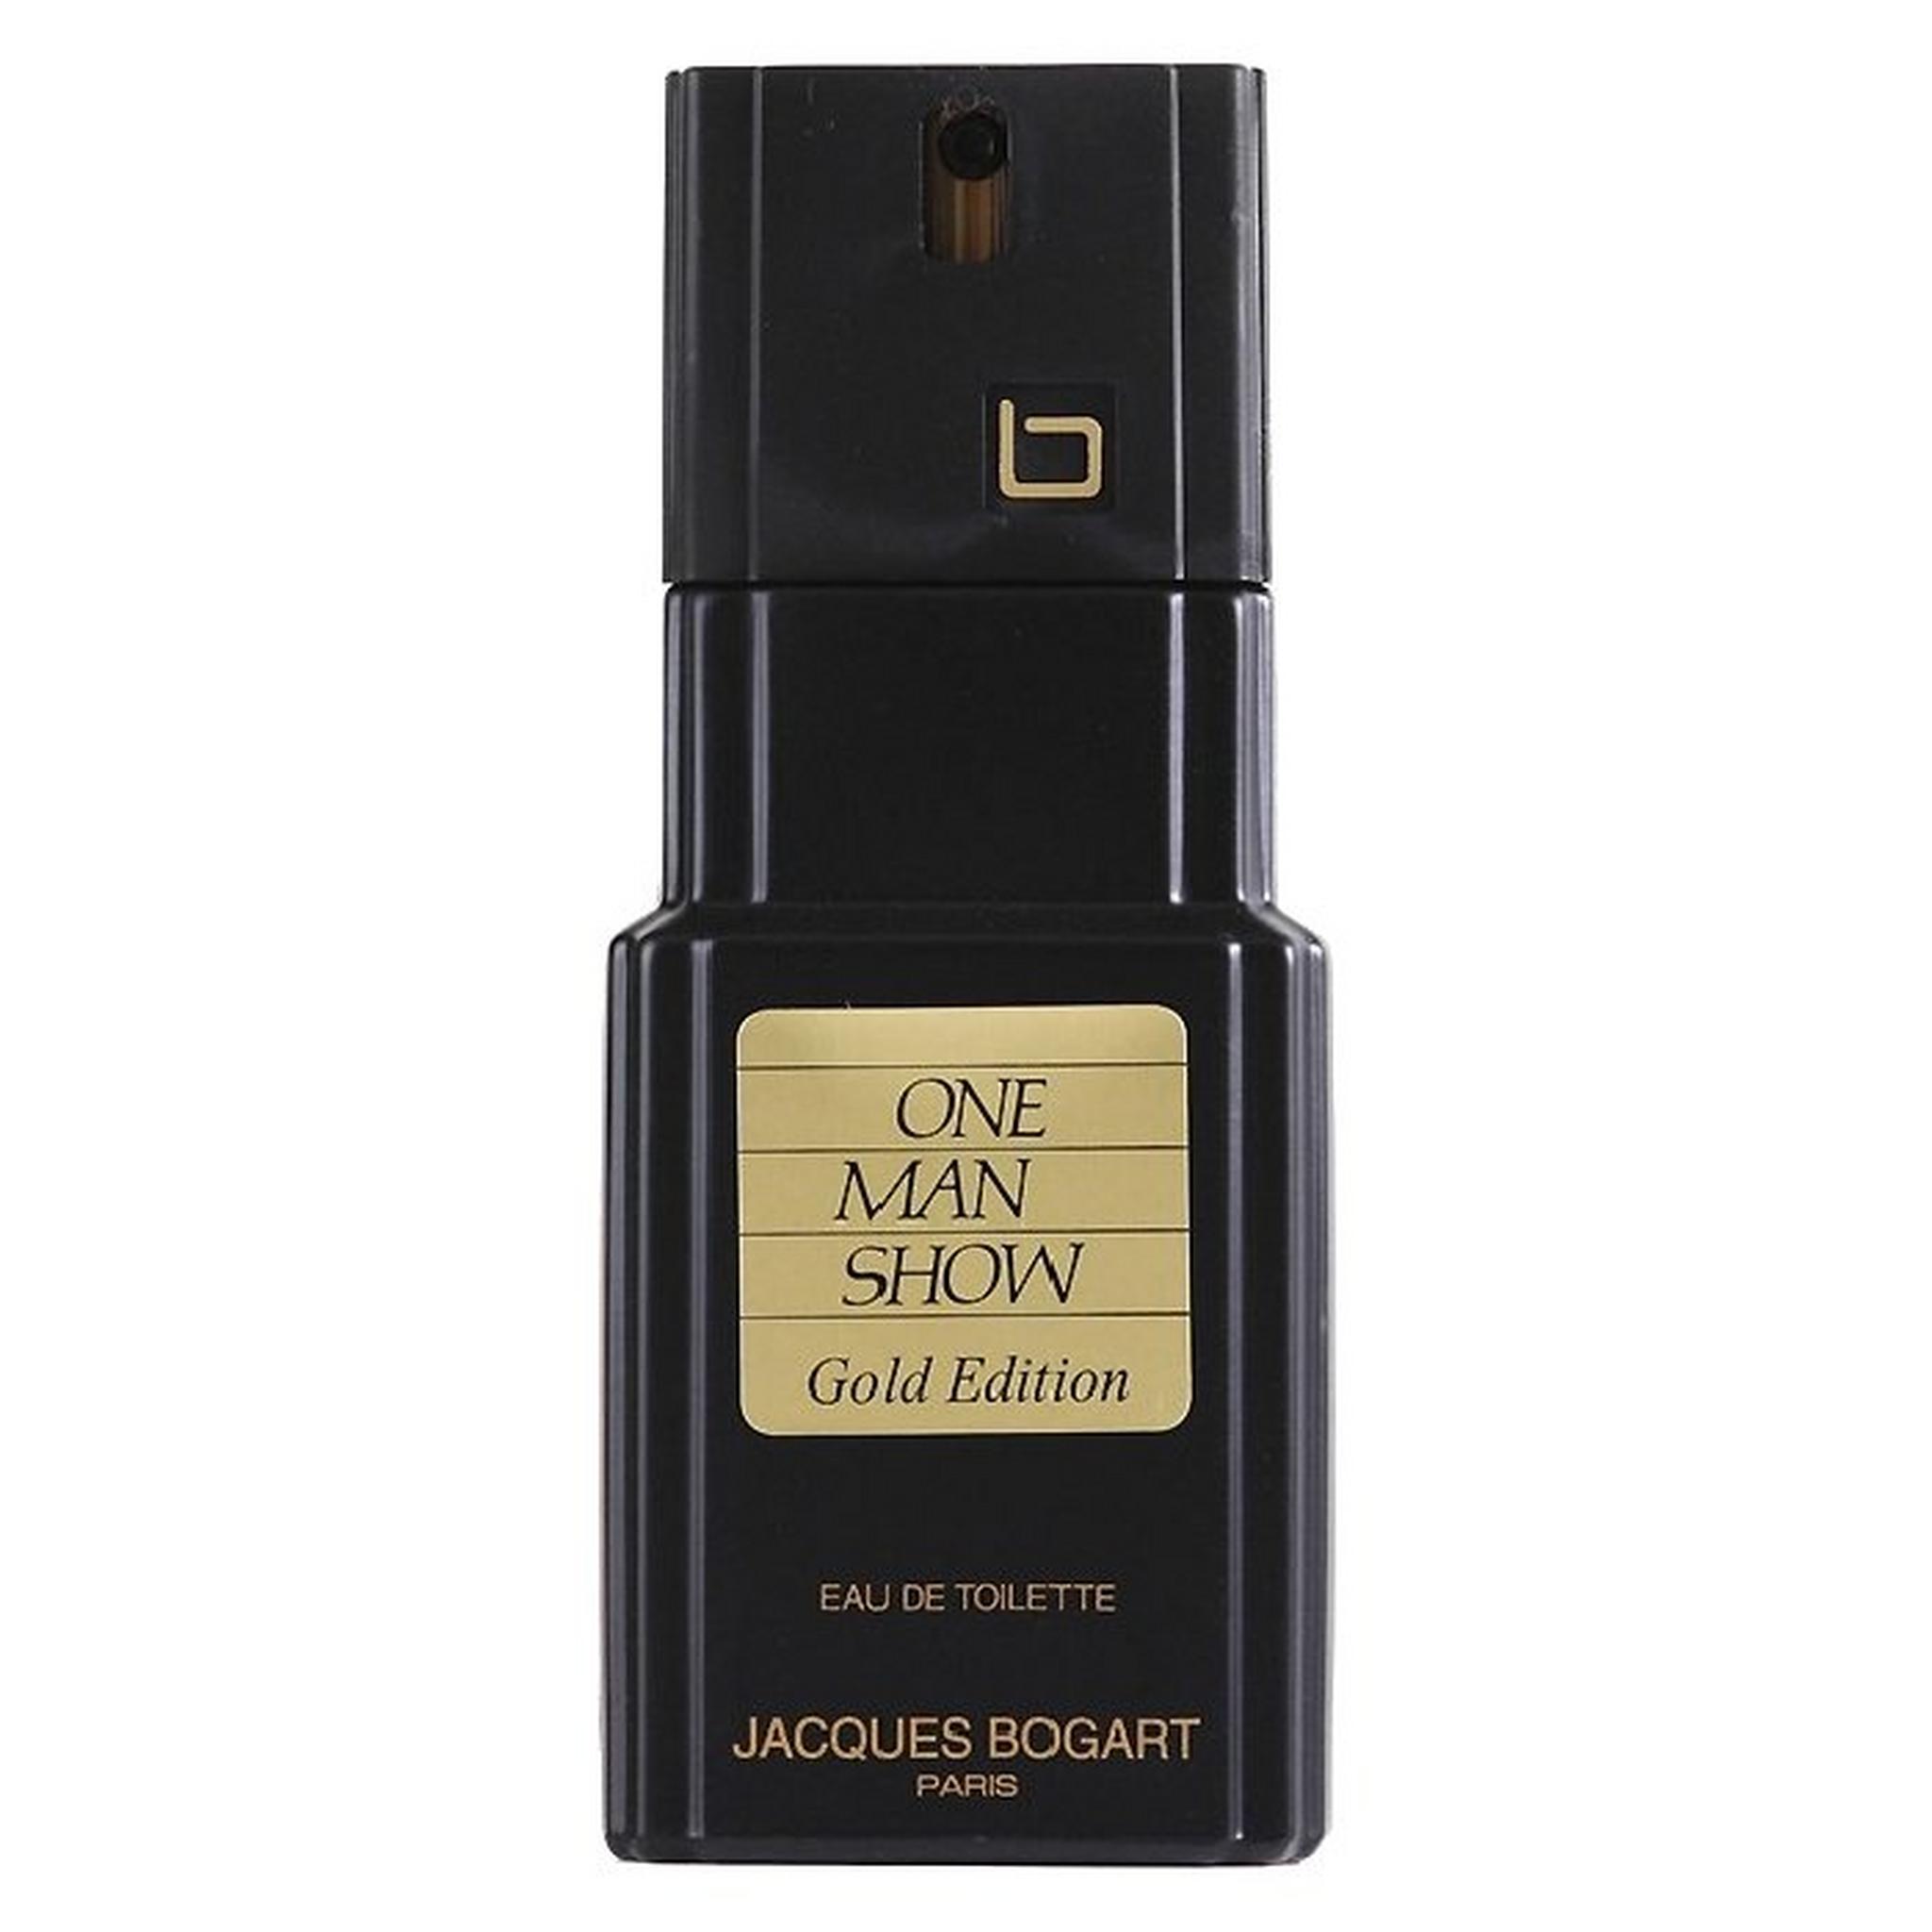 One Man Show Gold Edition by Jacques Bogart for Men 100 ml Eau De Toilette